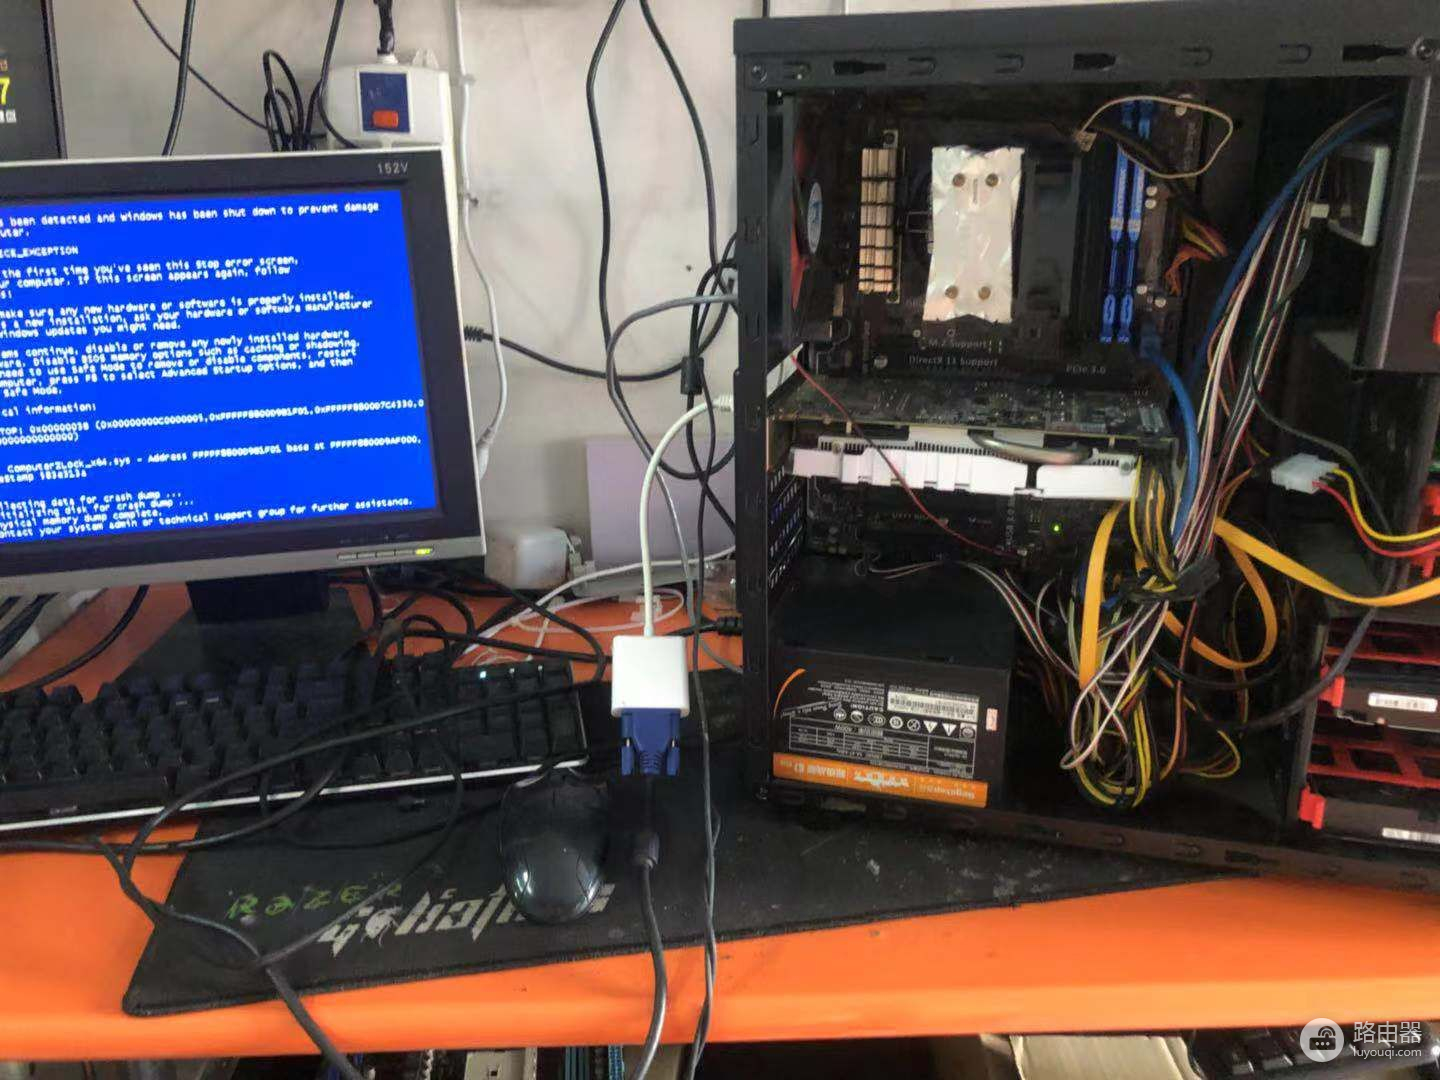 修好了十几年的老电脑(修好了十几年的老电脑值多少钱)